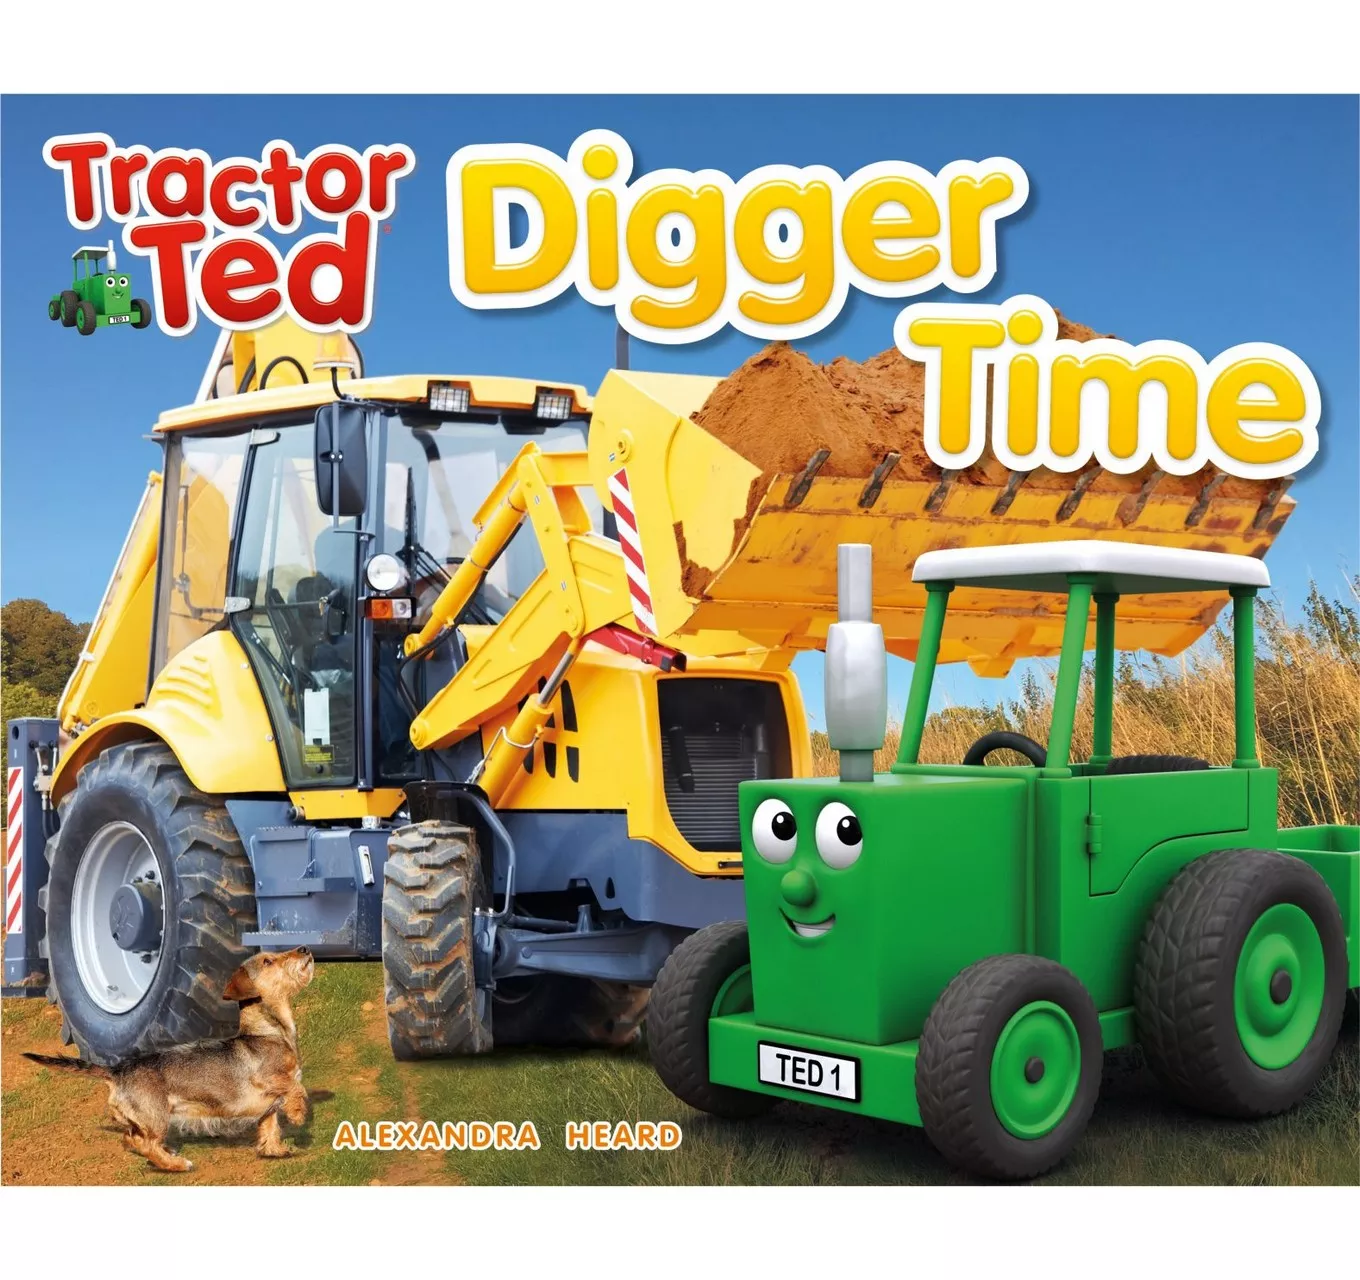 Digger Time Book